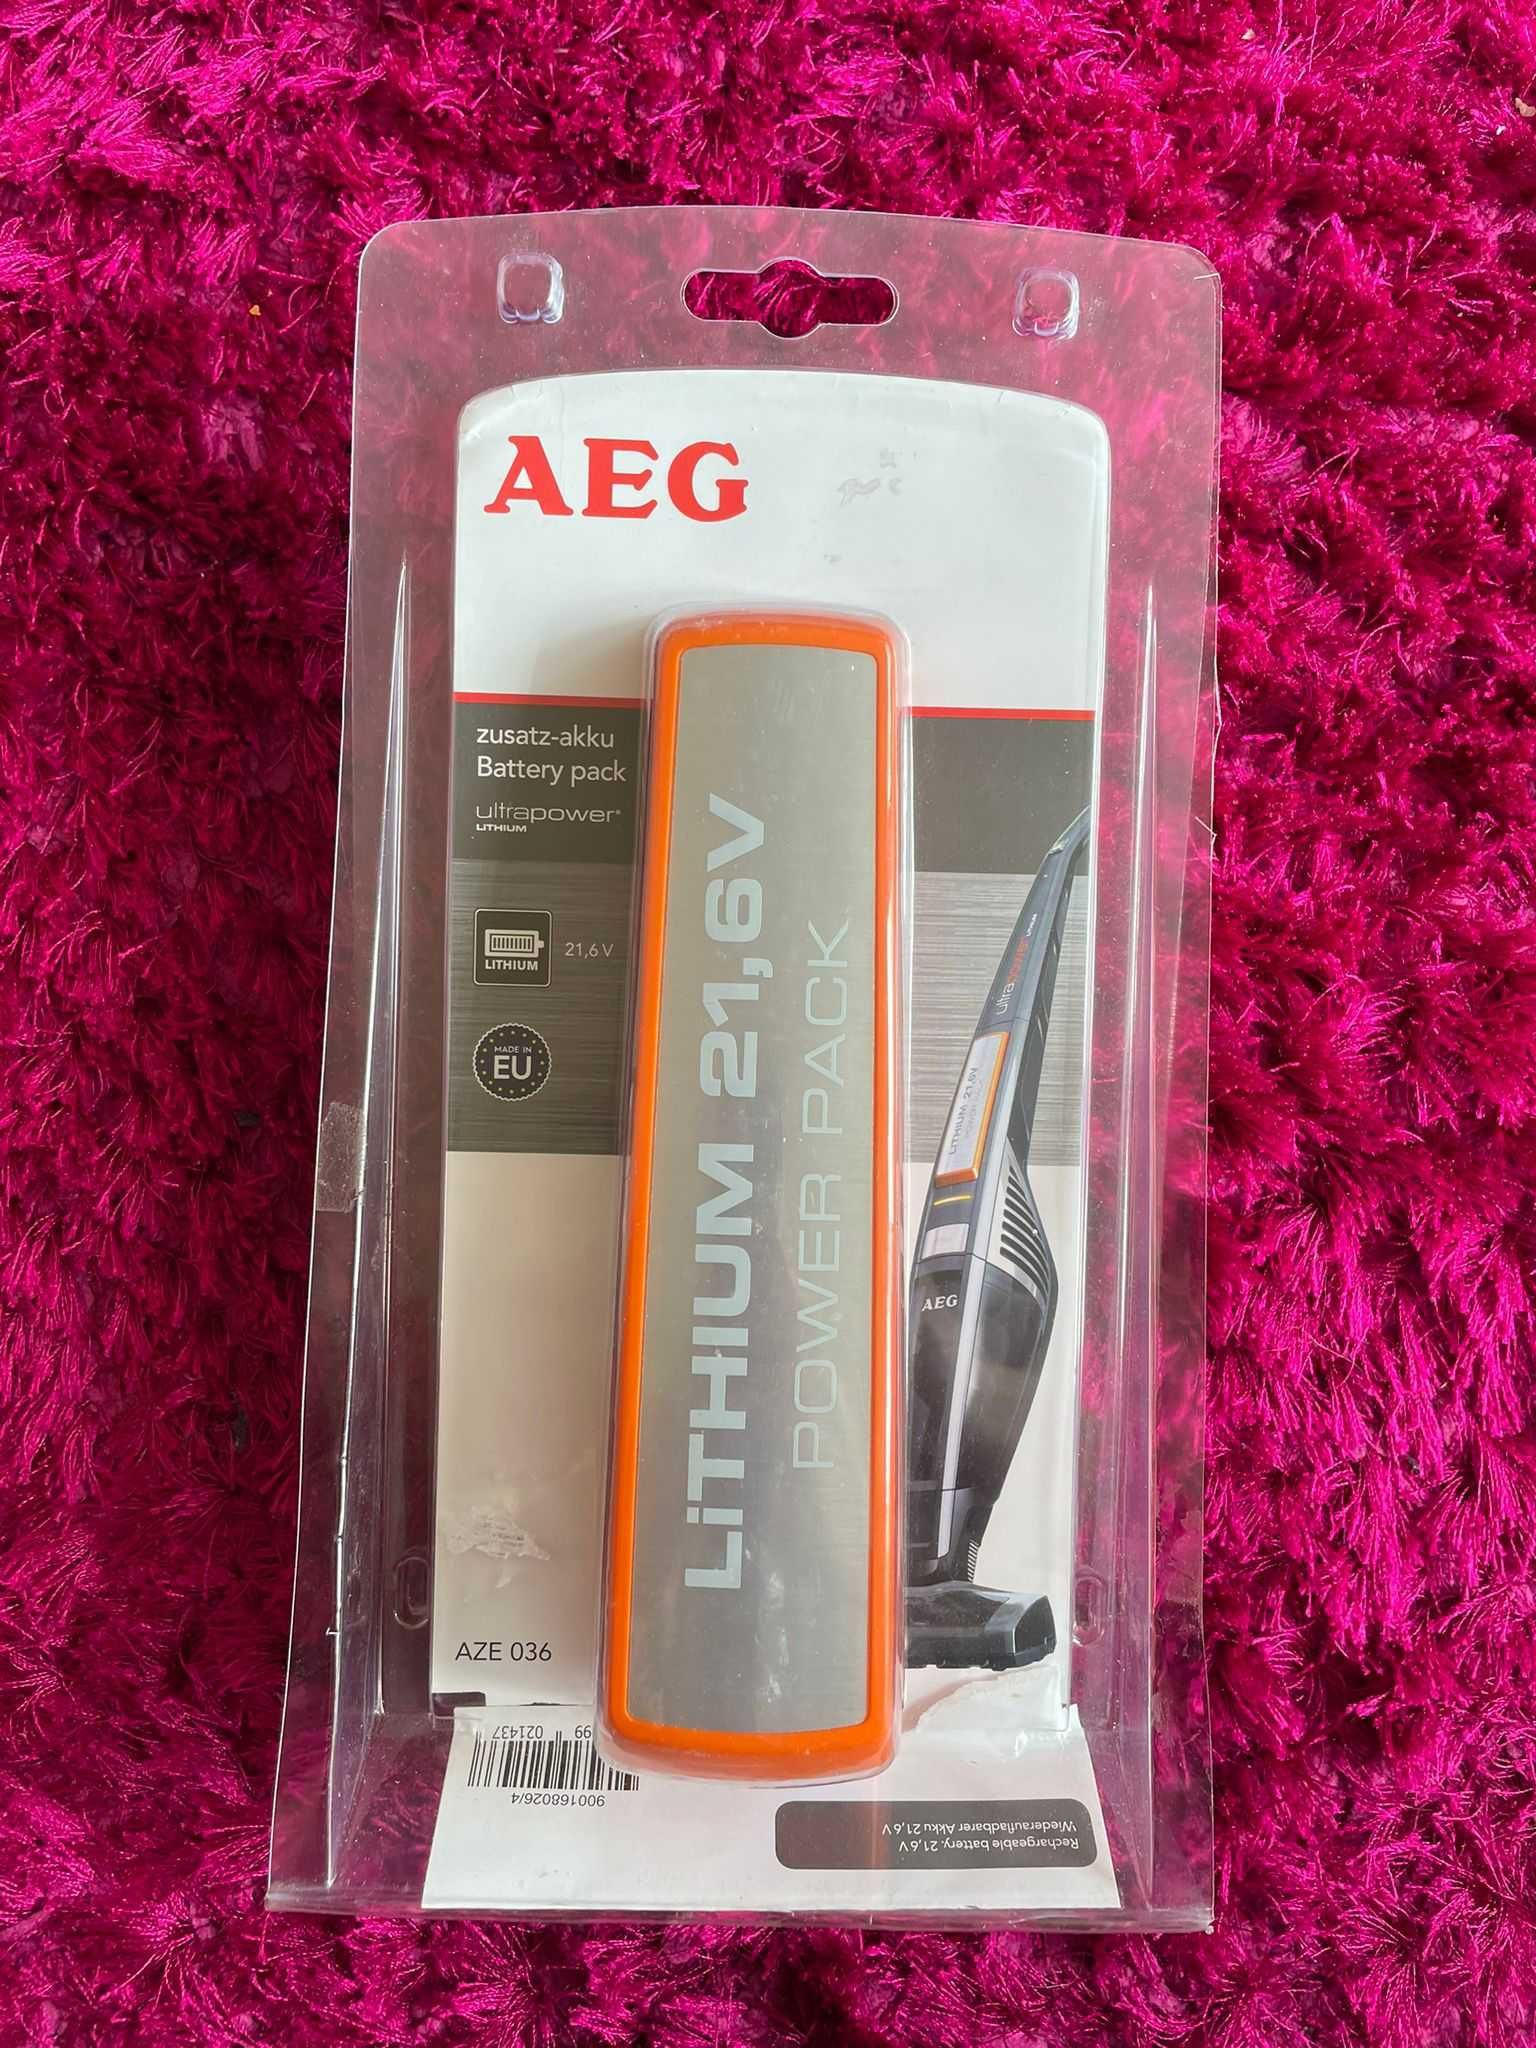 Akumulator AEG AZE 036 do odkurzacza